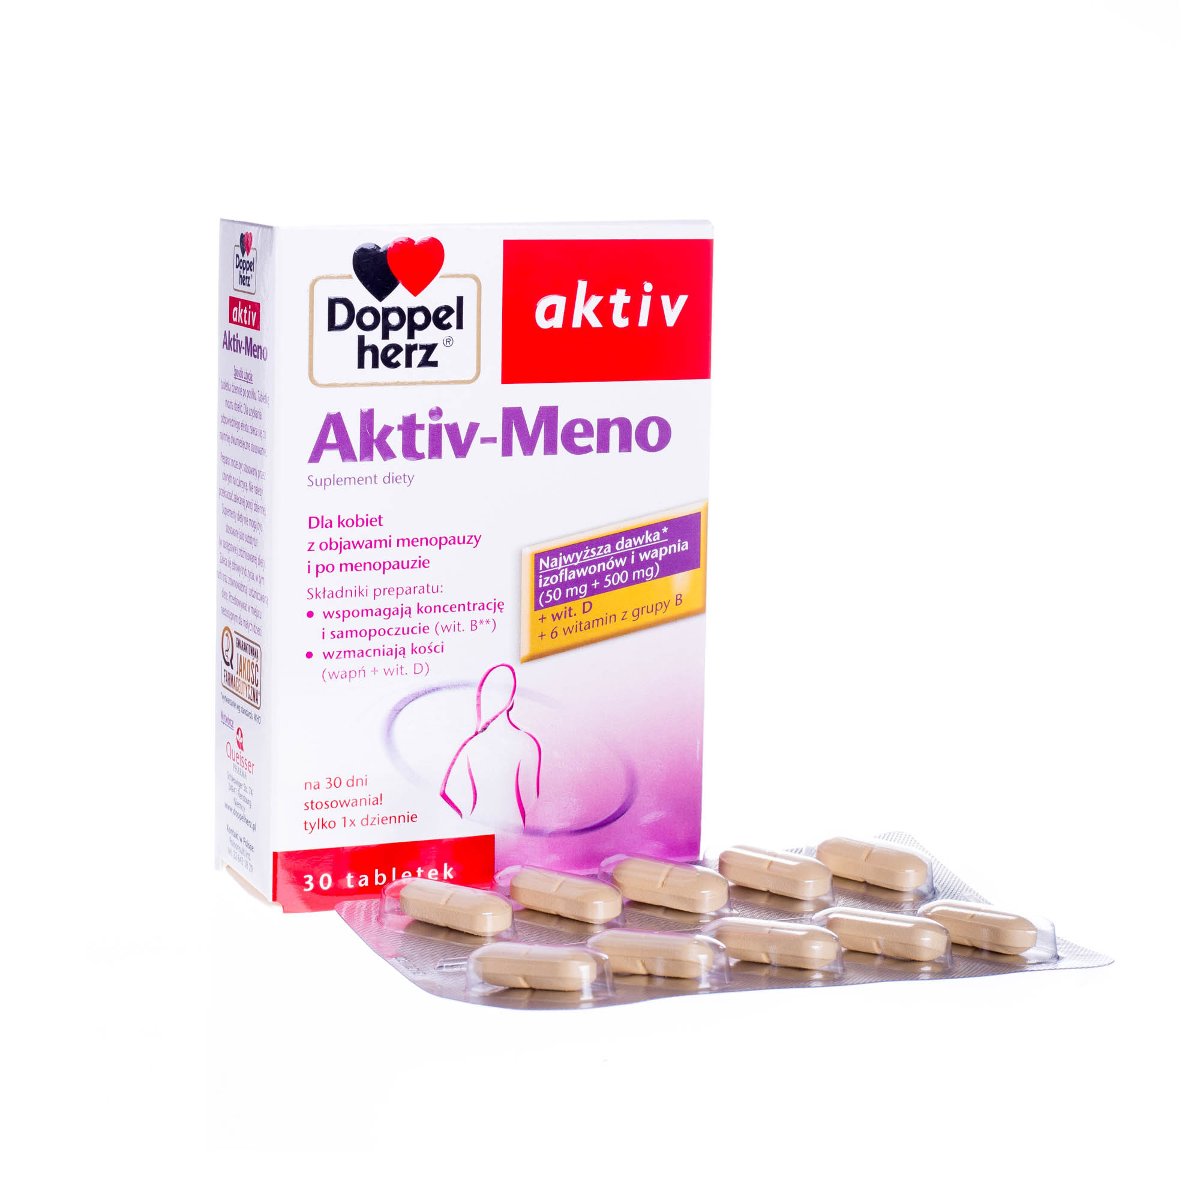 Фото - Вітаміни й мінерали Doppelherz aktiv Aktiv-Meno suplement diety 30 tabletek